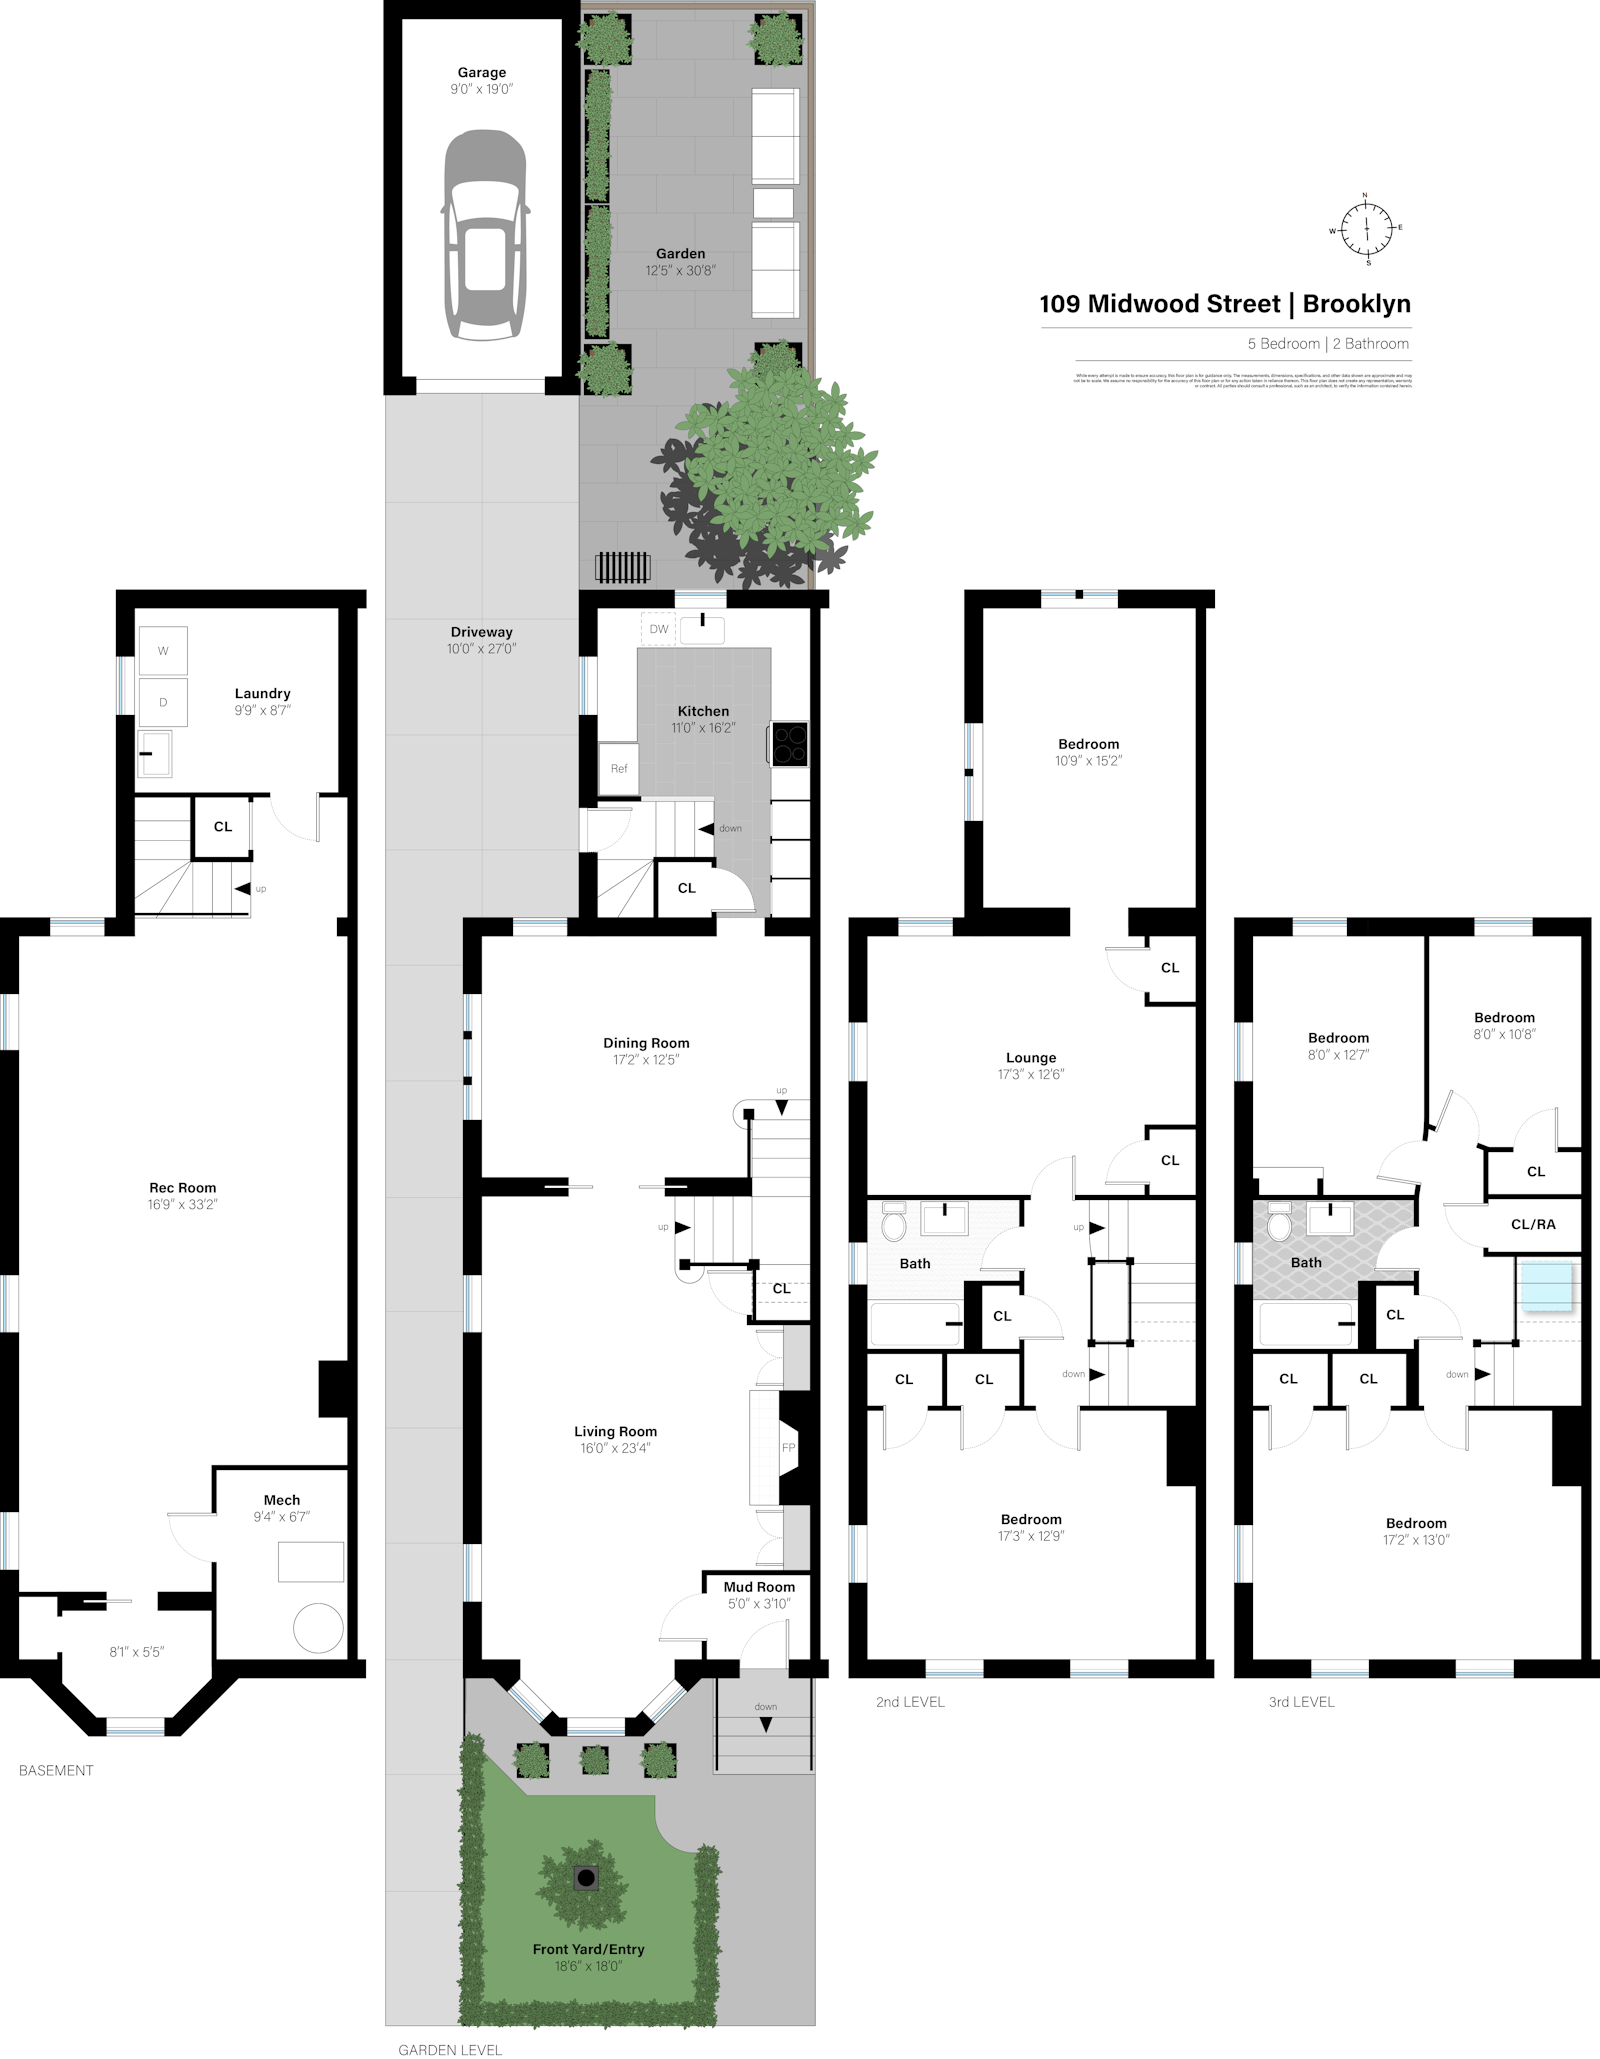 Floorplan for 109 Midwood Street